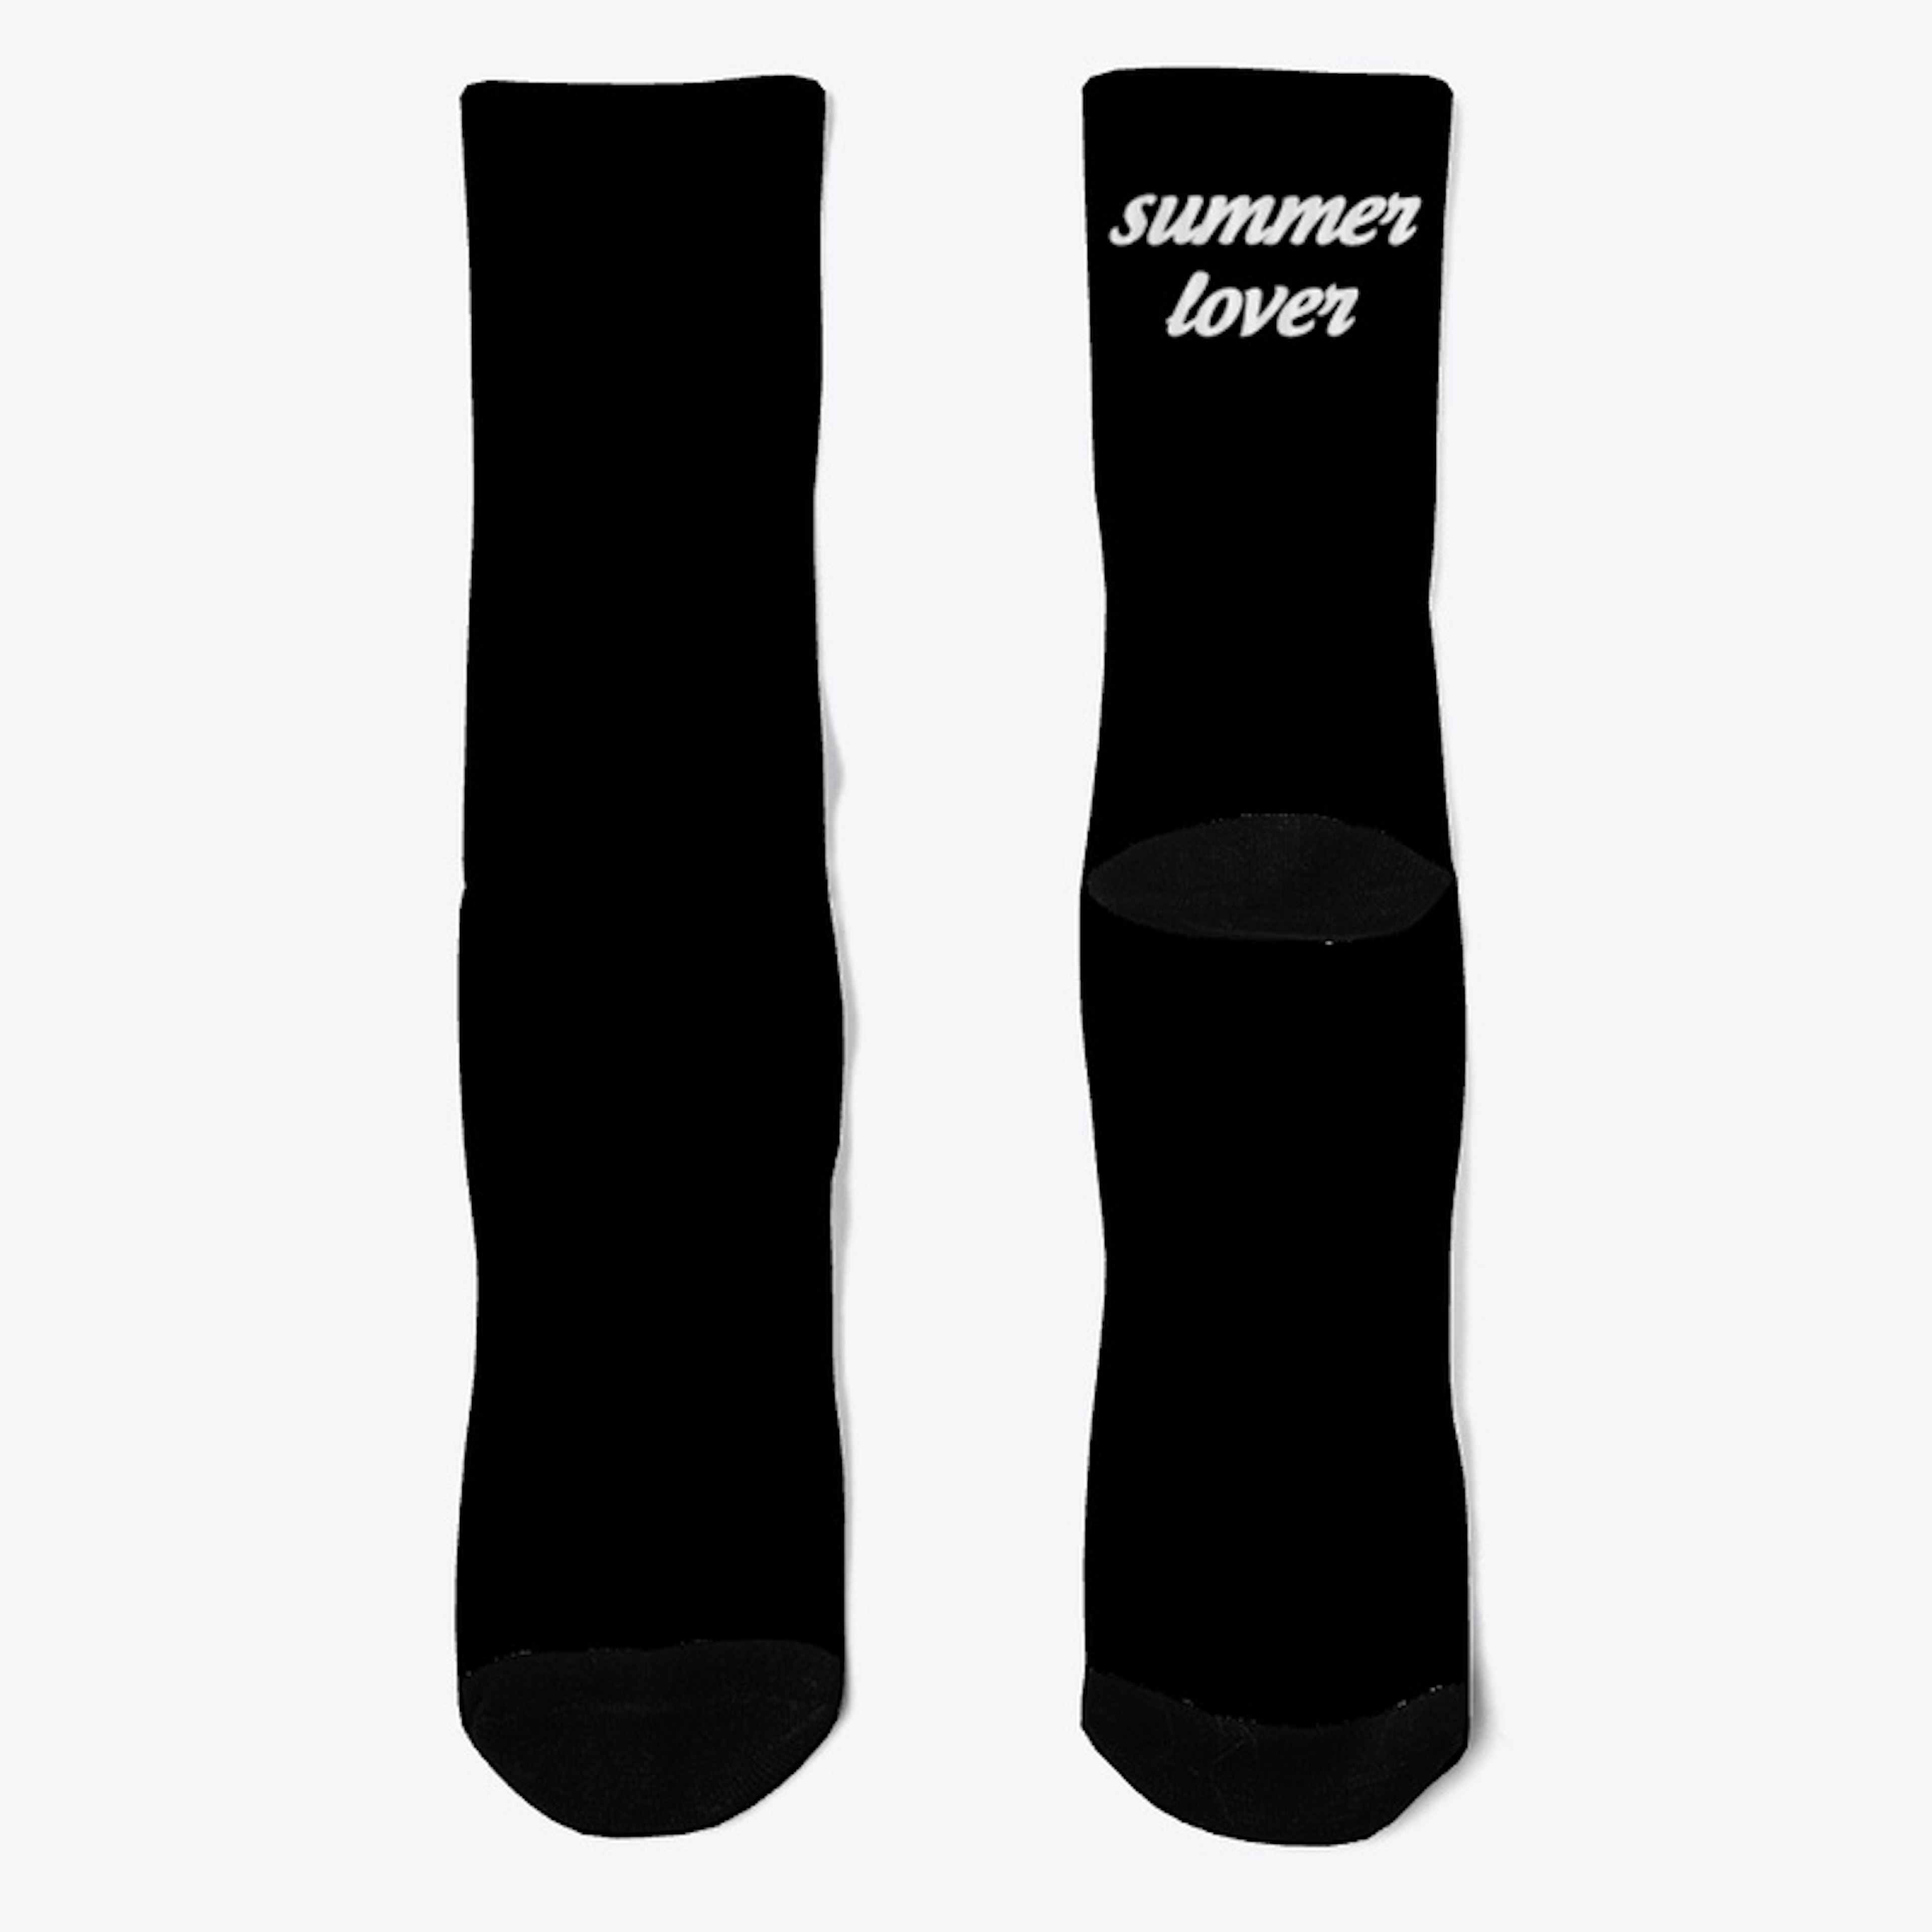 summer lover socks